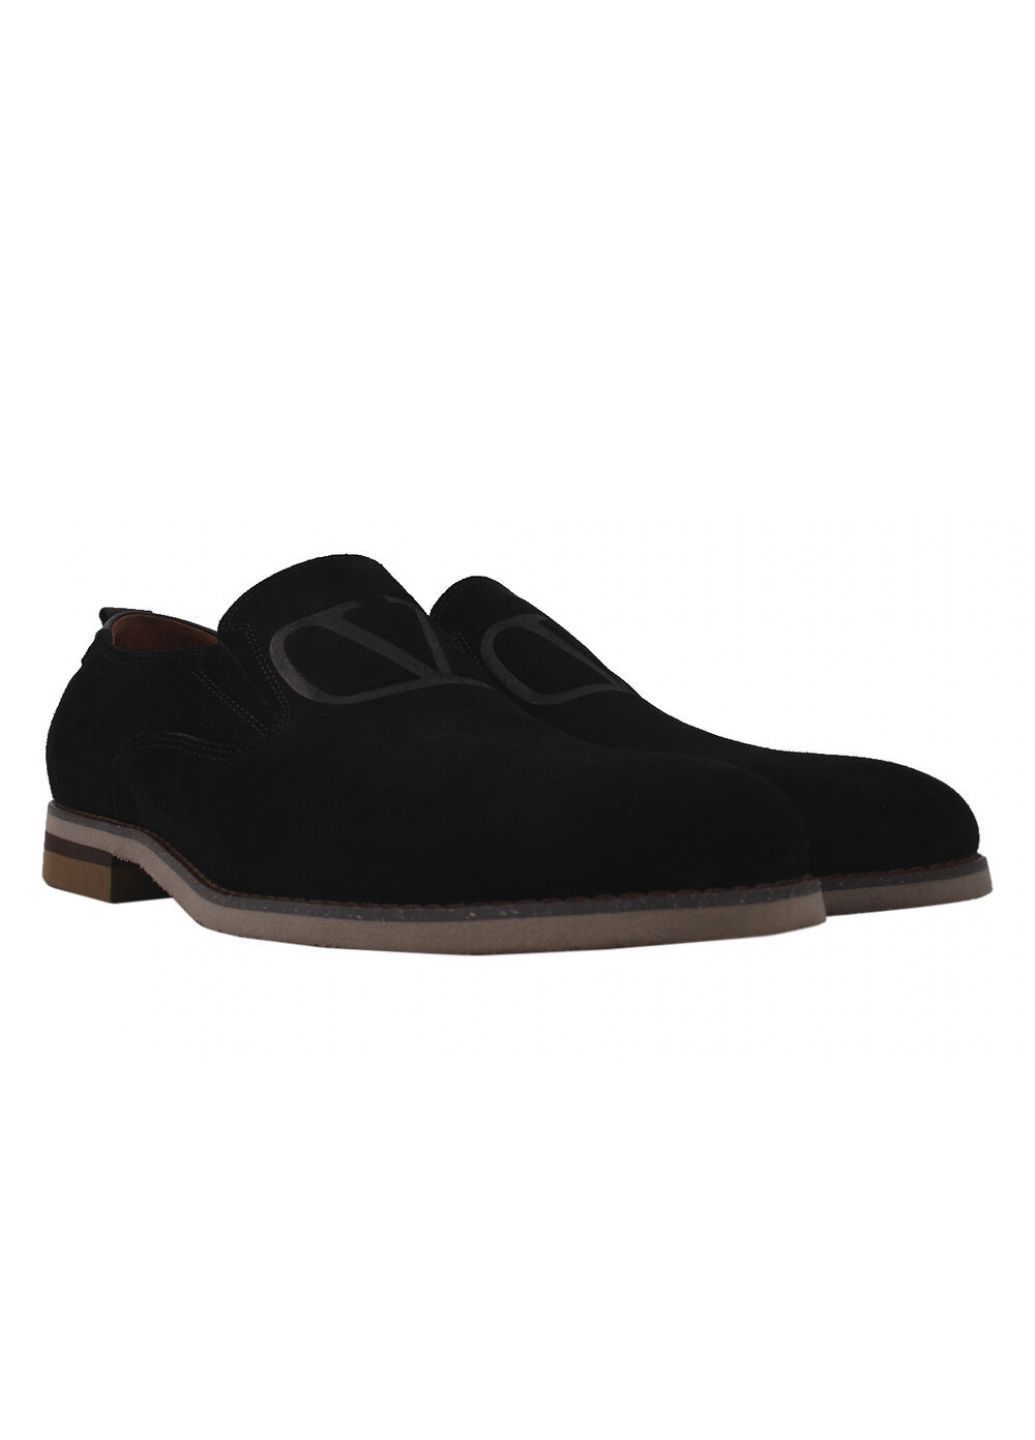 Туфлі класика чоловічі Натуральна замша, колір чорний Antoni Bianchi 6-20dt (257420181)